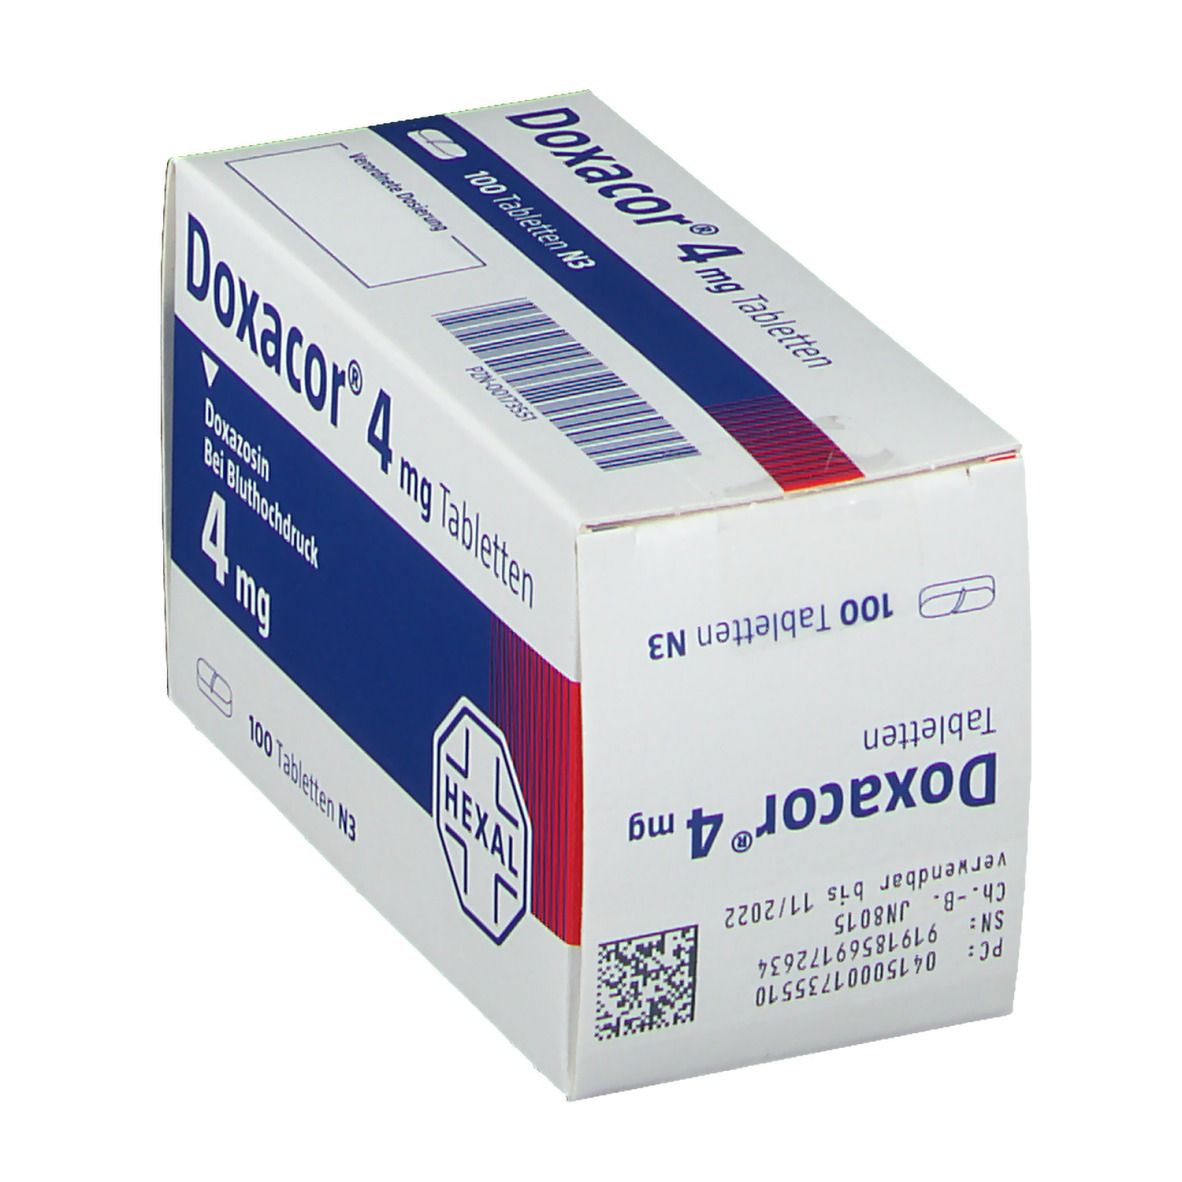 Doxacor® 4 mg